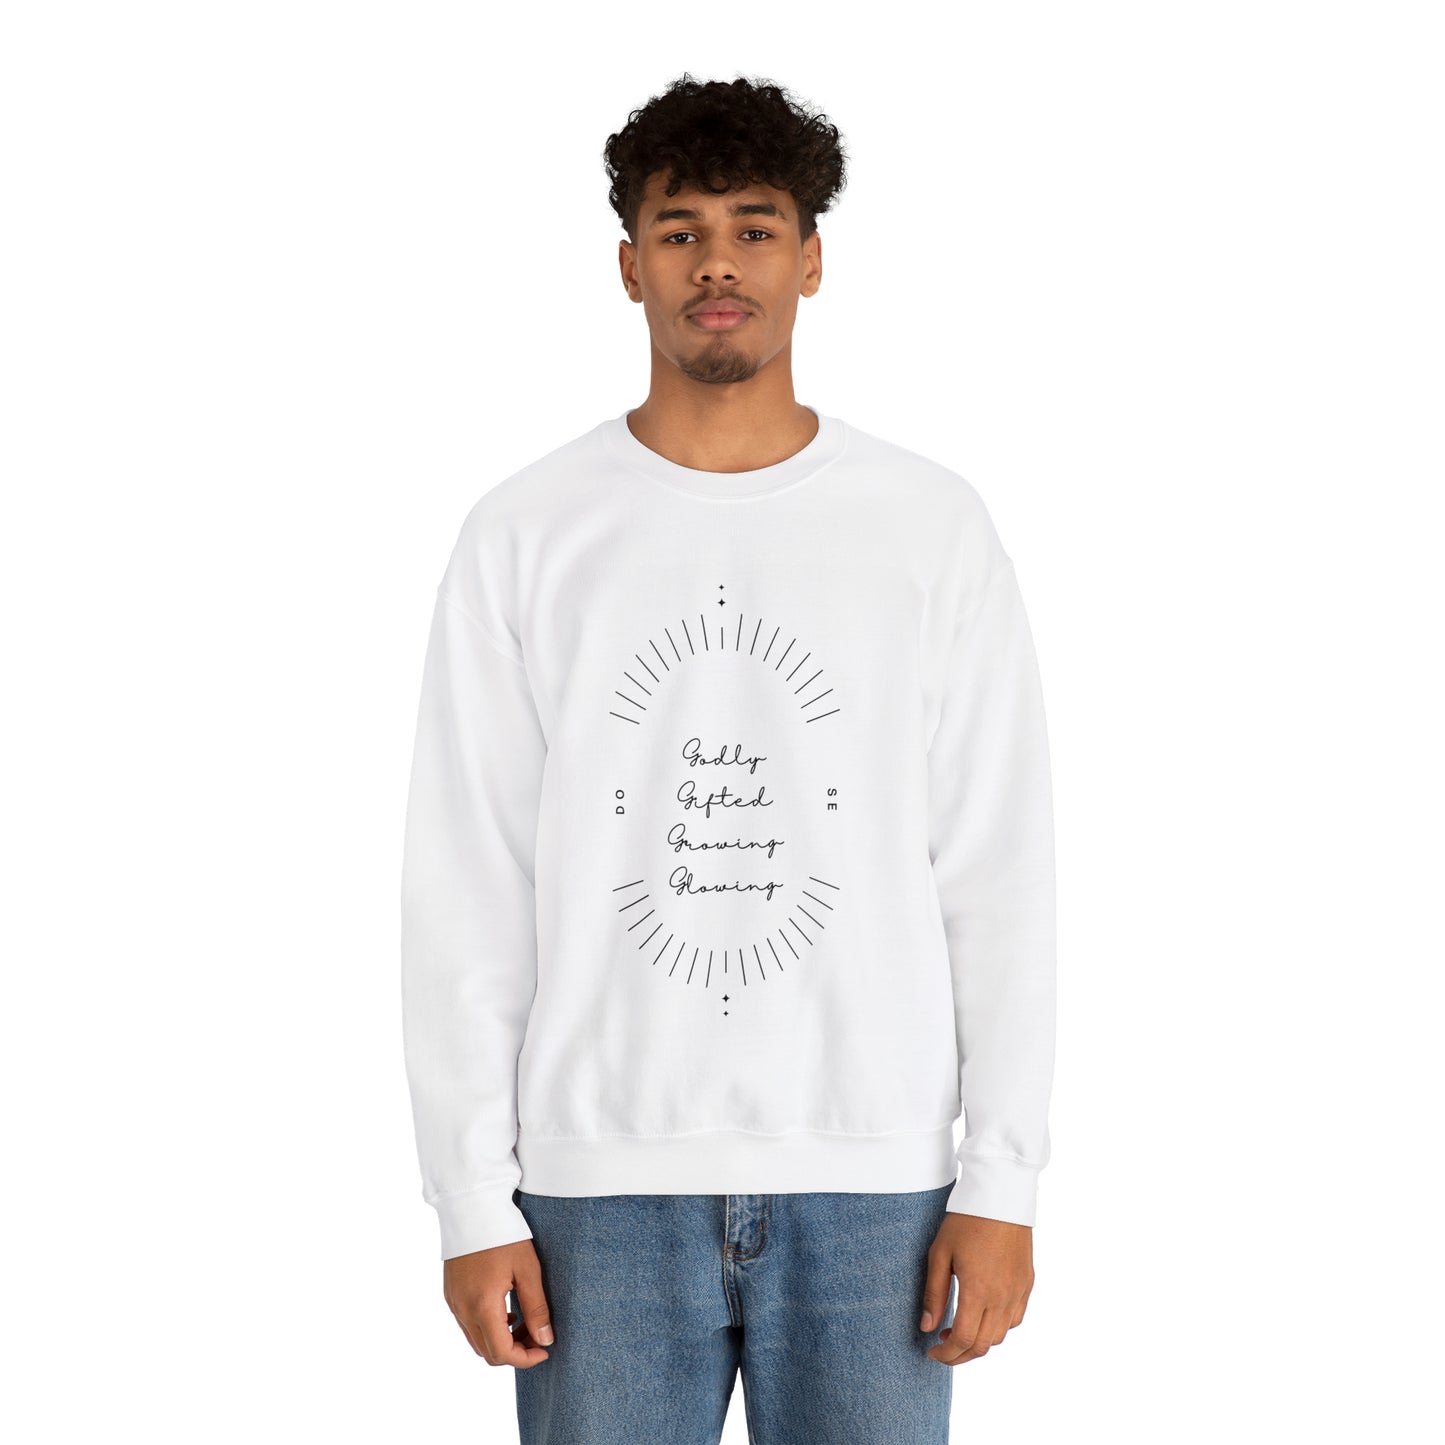 "Godly" Crewneck Sweatshirt